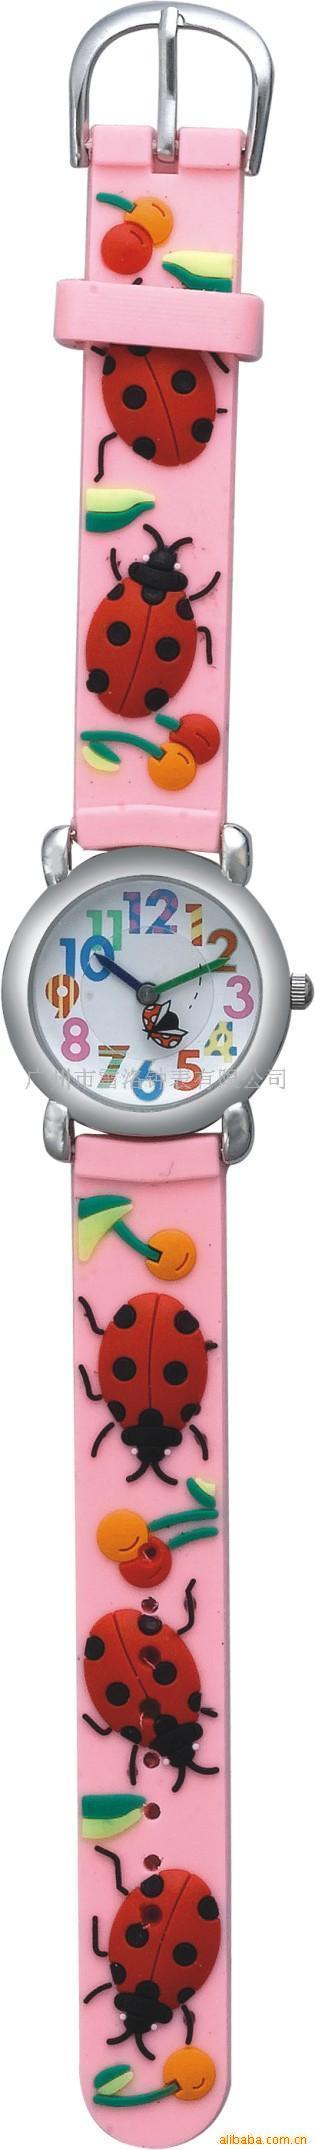 雷洛钟表,儿童表,卡通表,礼品表,石英手表信息